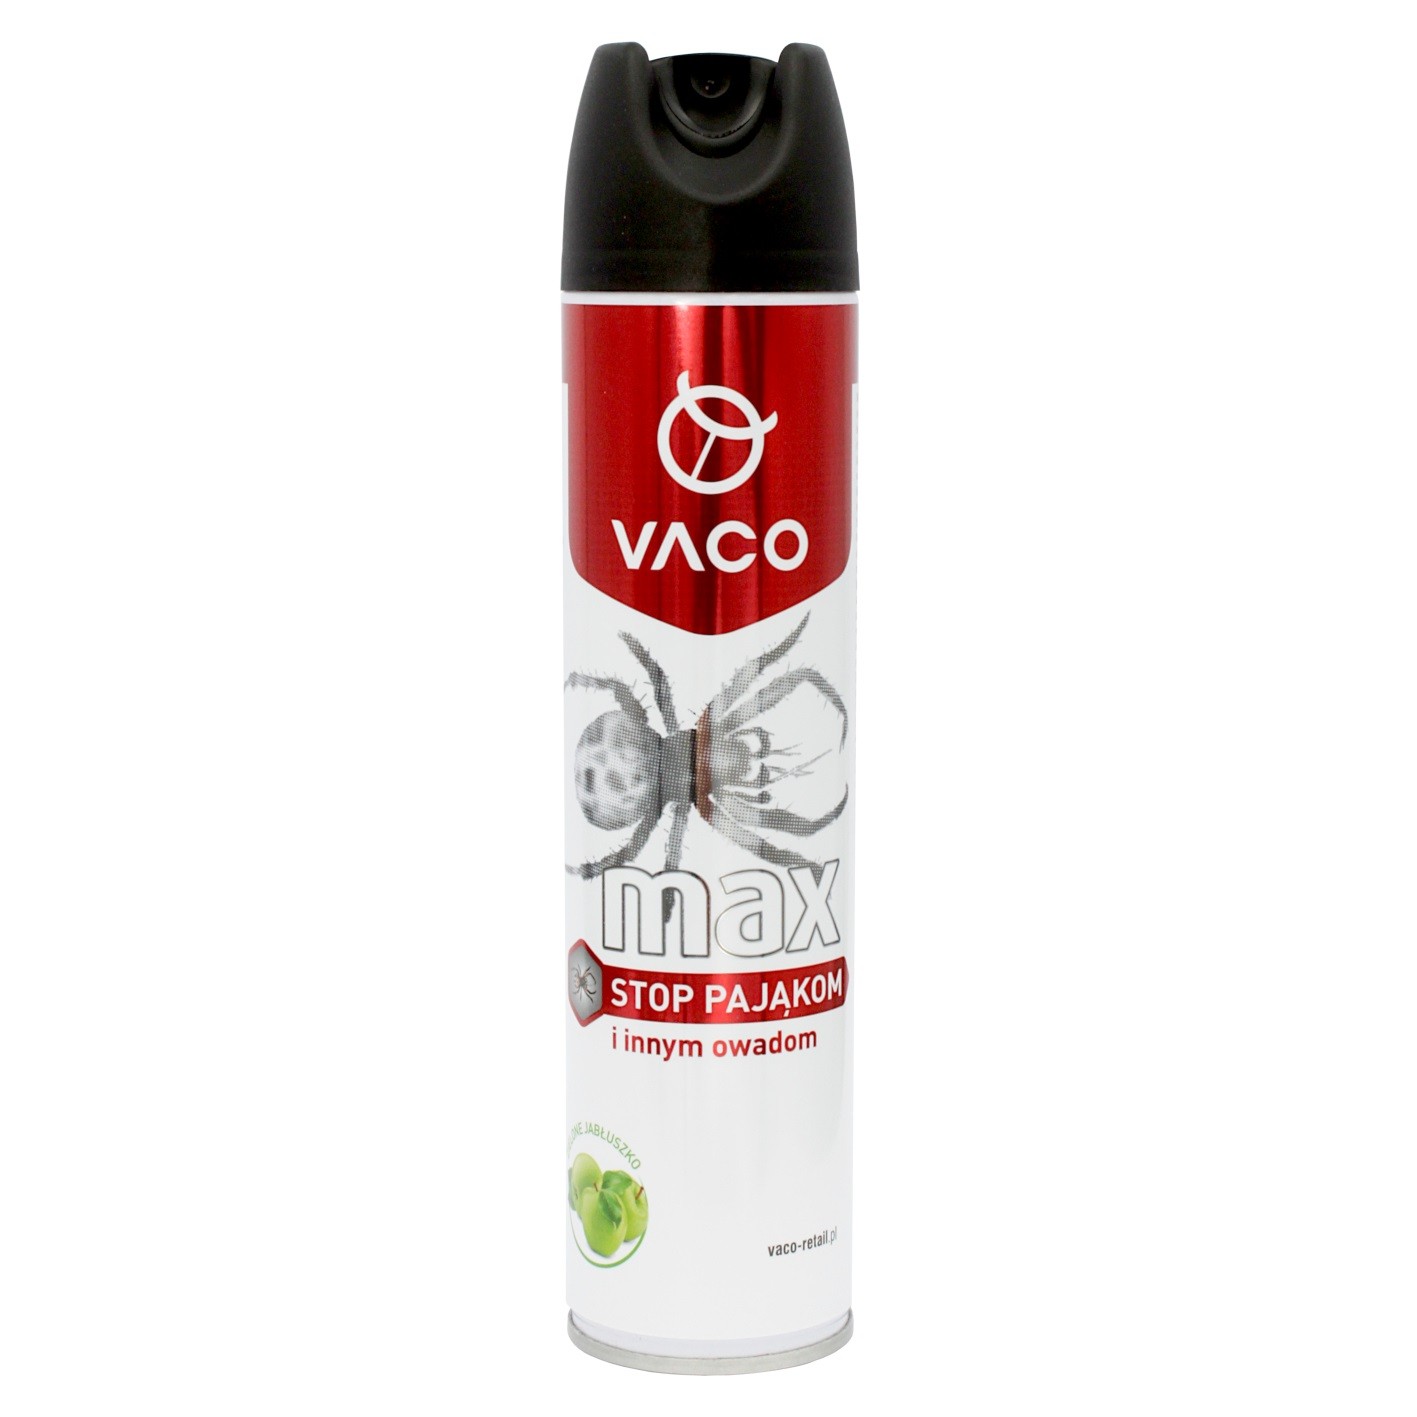 VACO MAX Spray na pająki 300ml